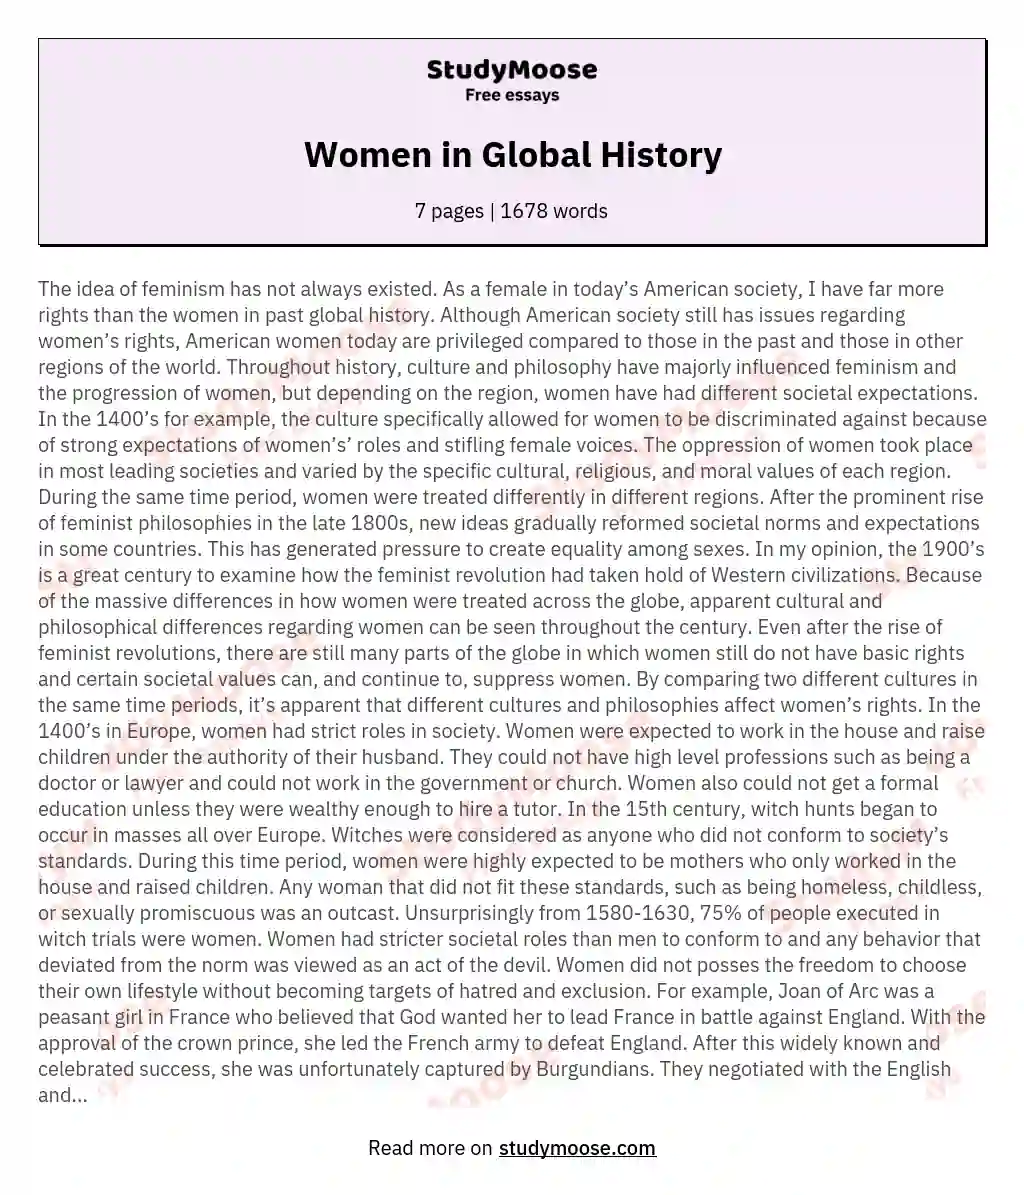 Women in Global History essay